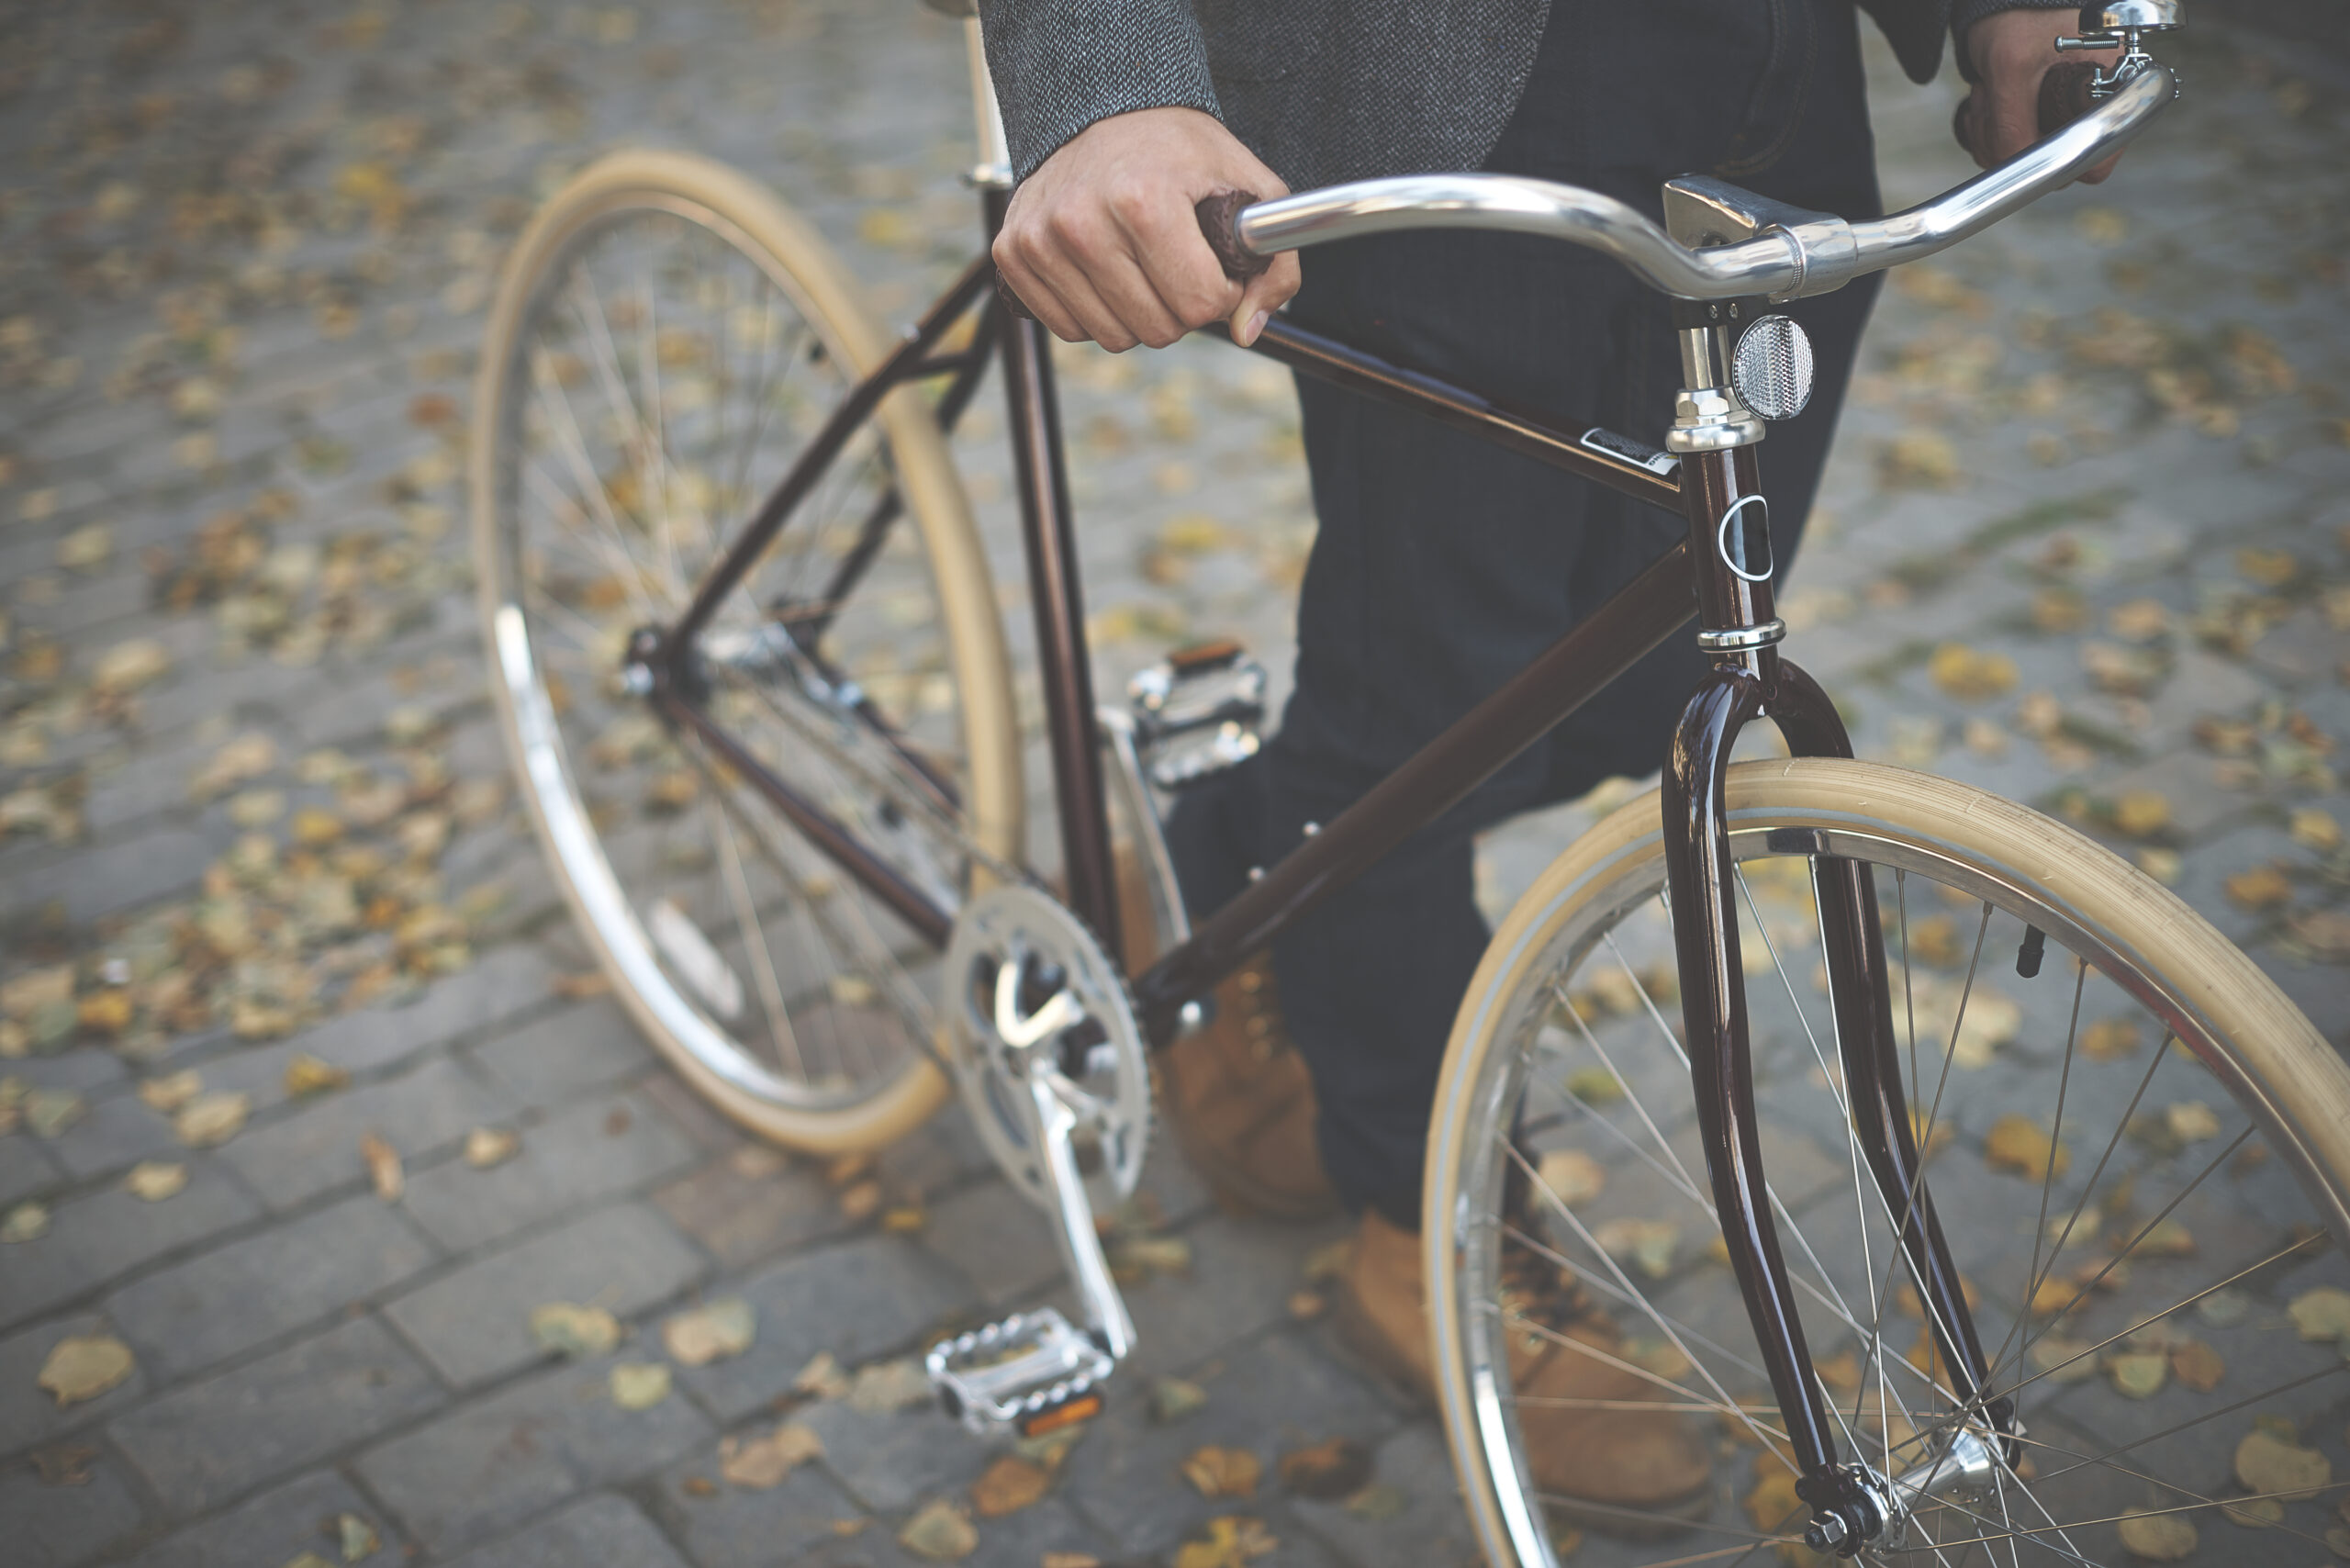 La bicicleta, transporte saludable y respetuoso con el medio ambiente